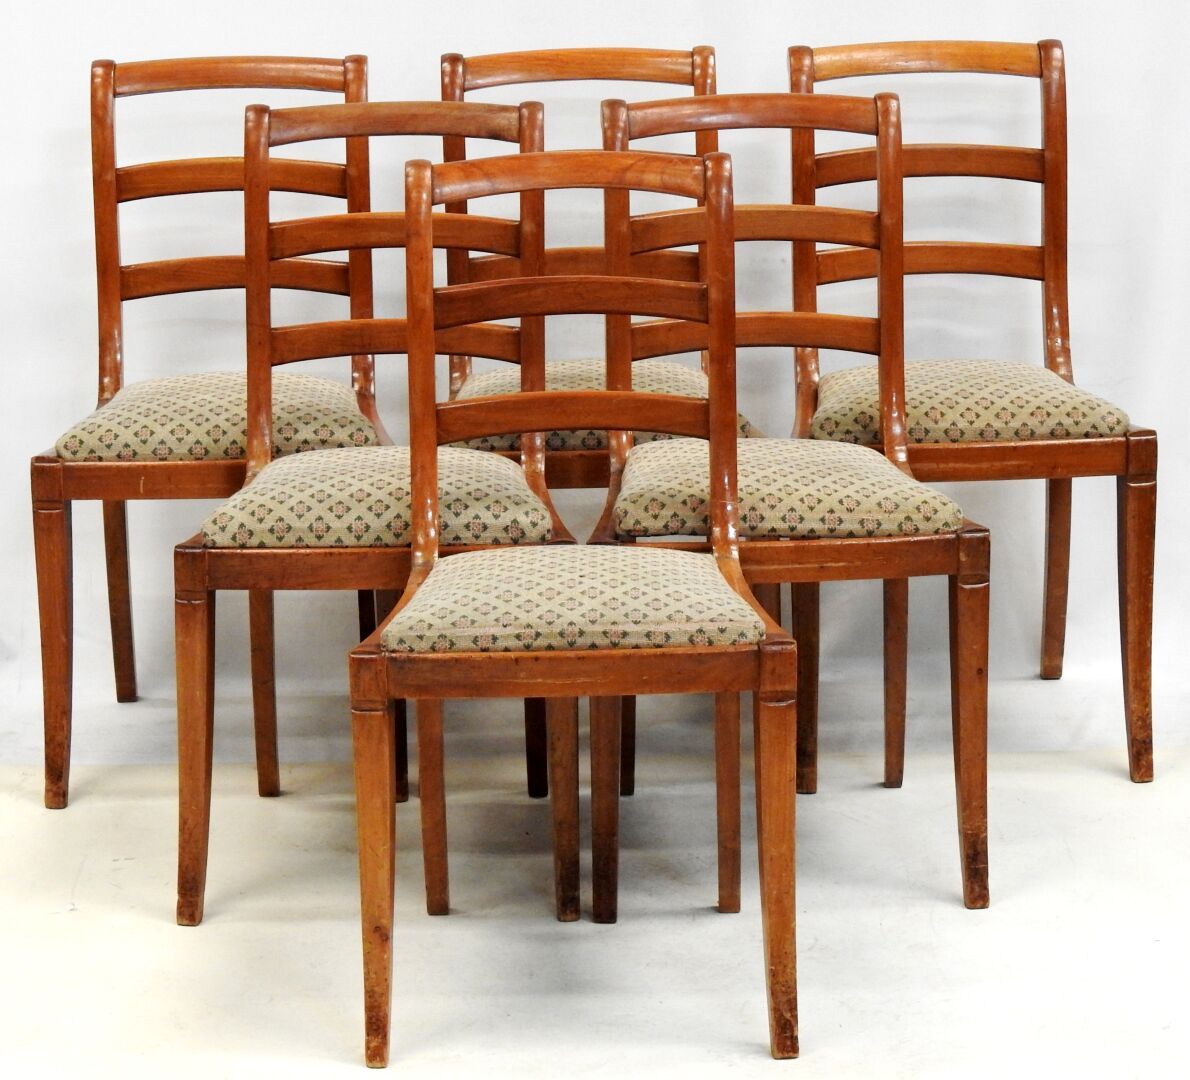 Null Suite de six chaises à galettes en bois naturel à dossiers ajourés

Usures.